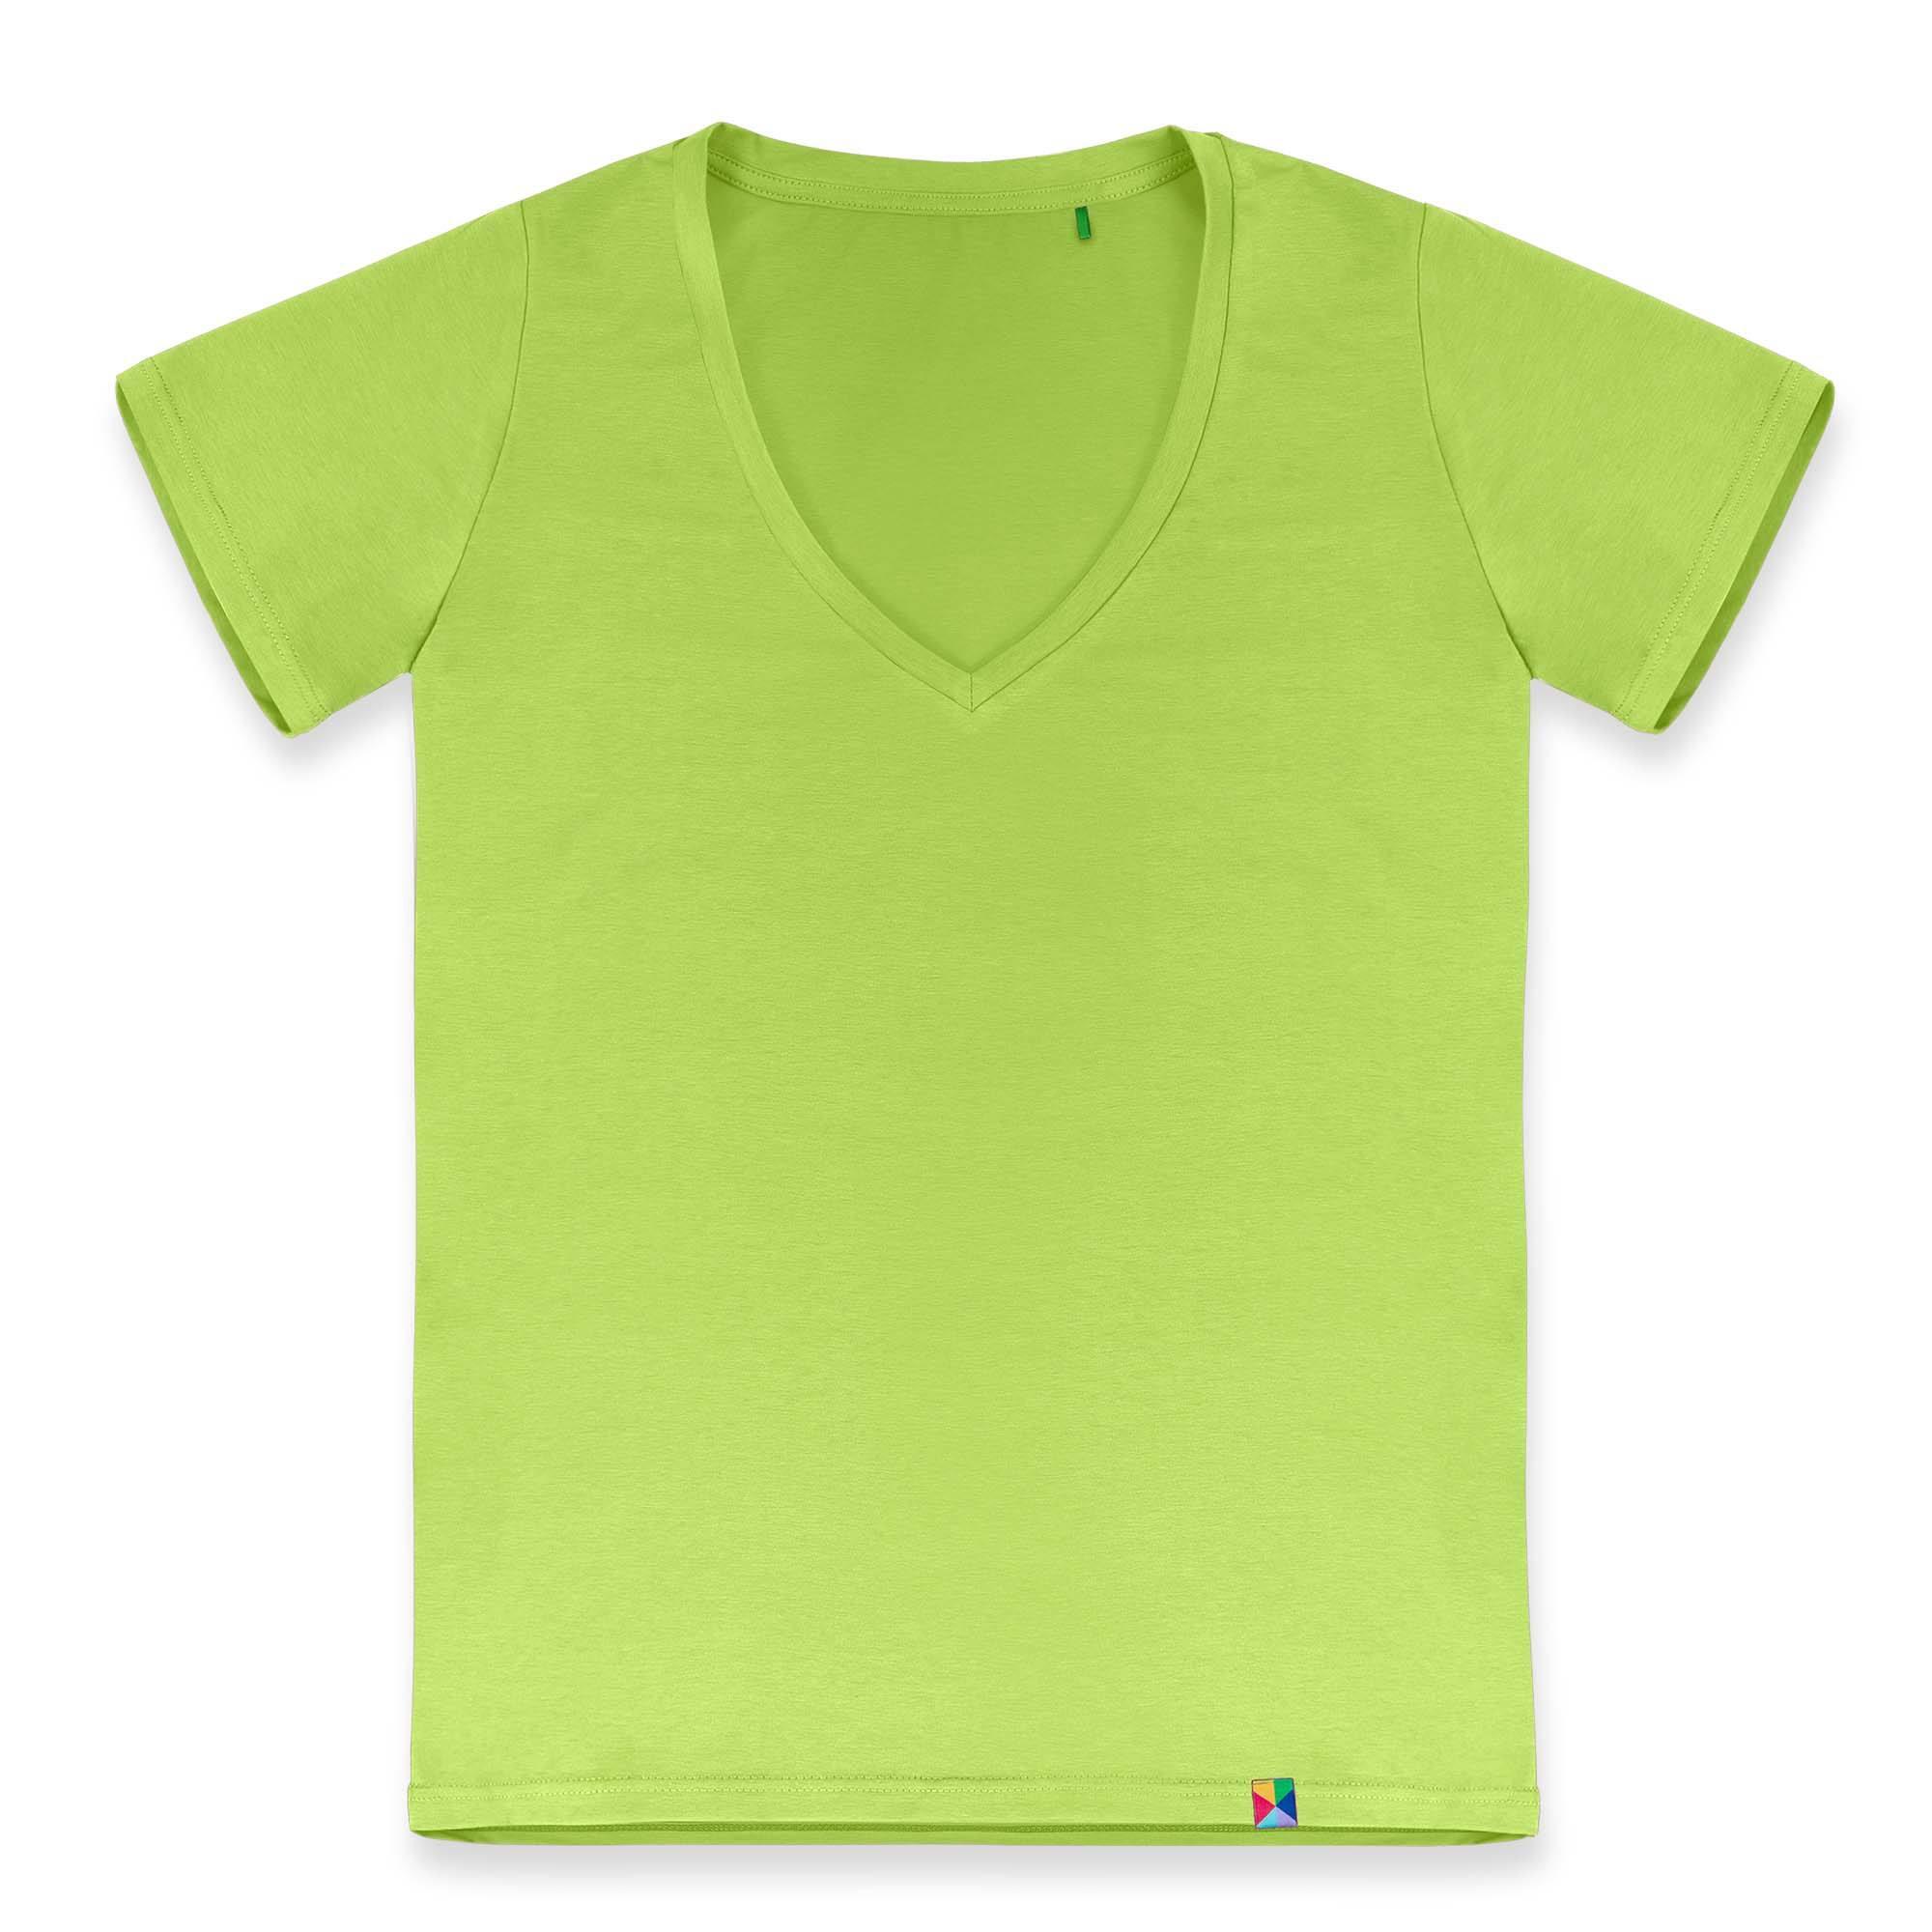 Limonkowy T-shirt damski